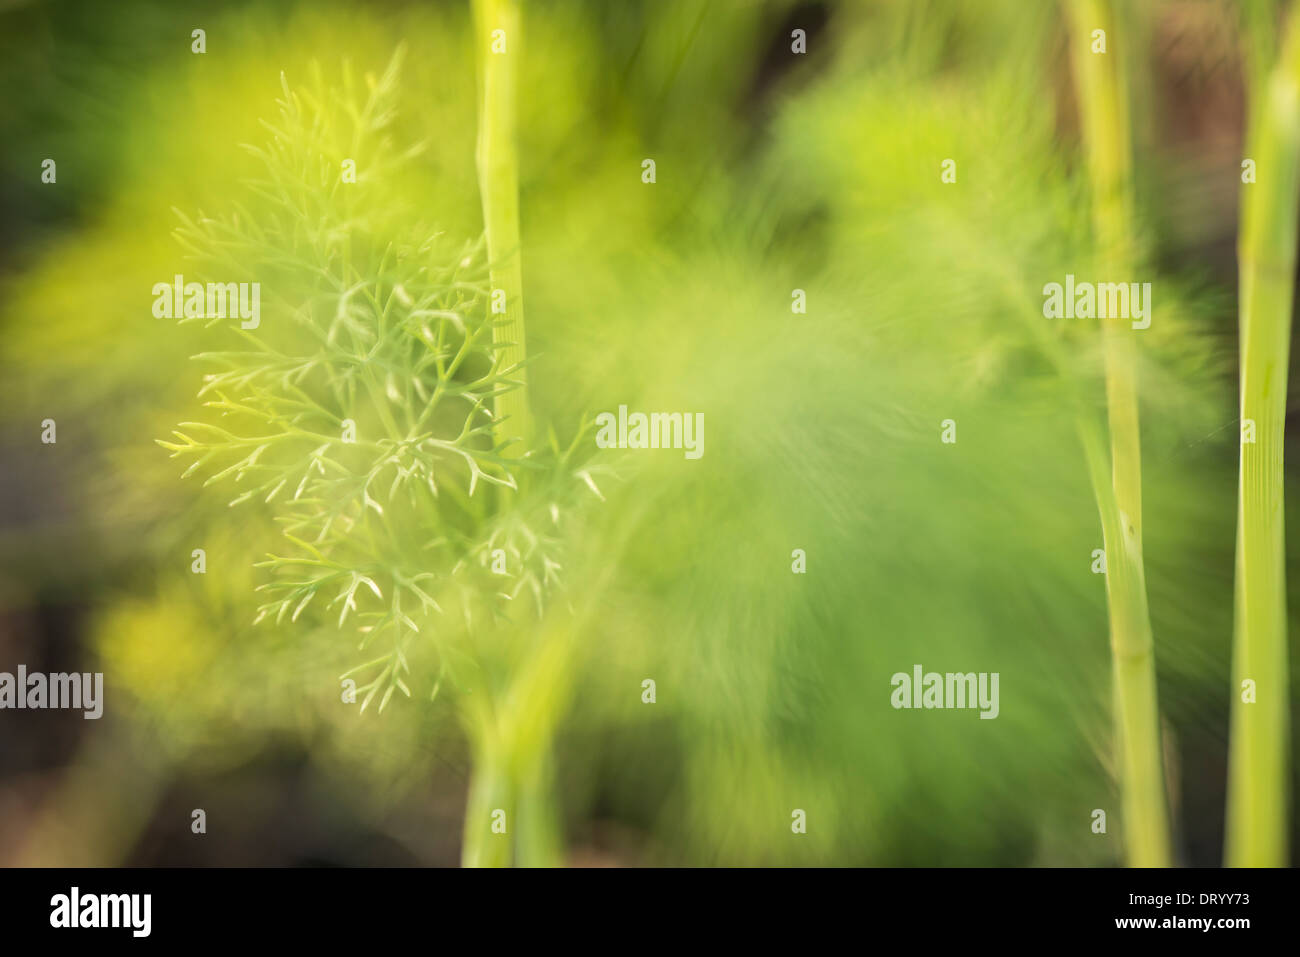 Primo piano di organico cresciuto l'aneto (Anethum graveolens) cresce in giardino Foto Stock